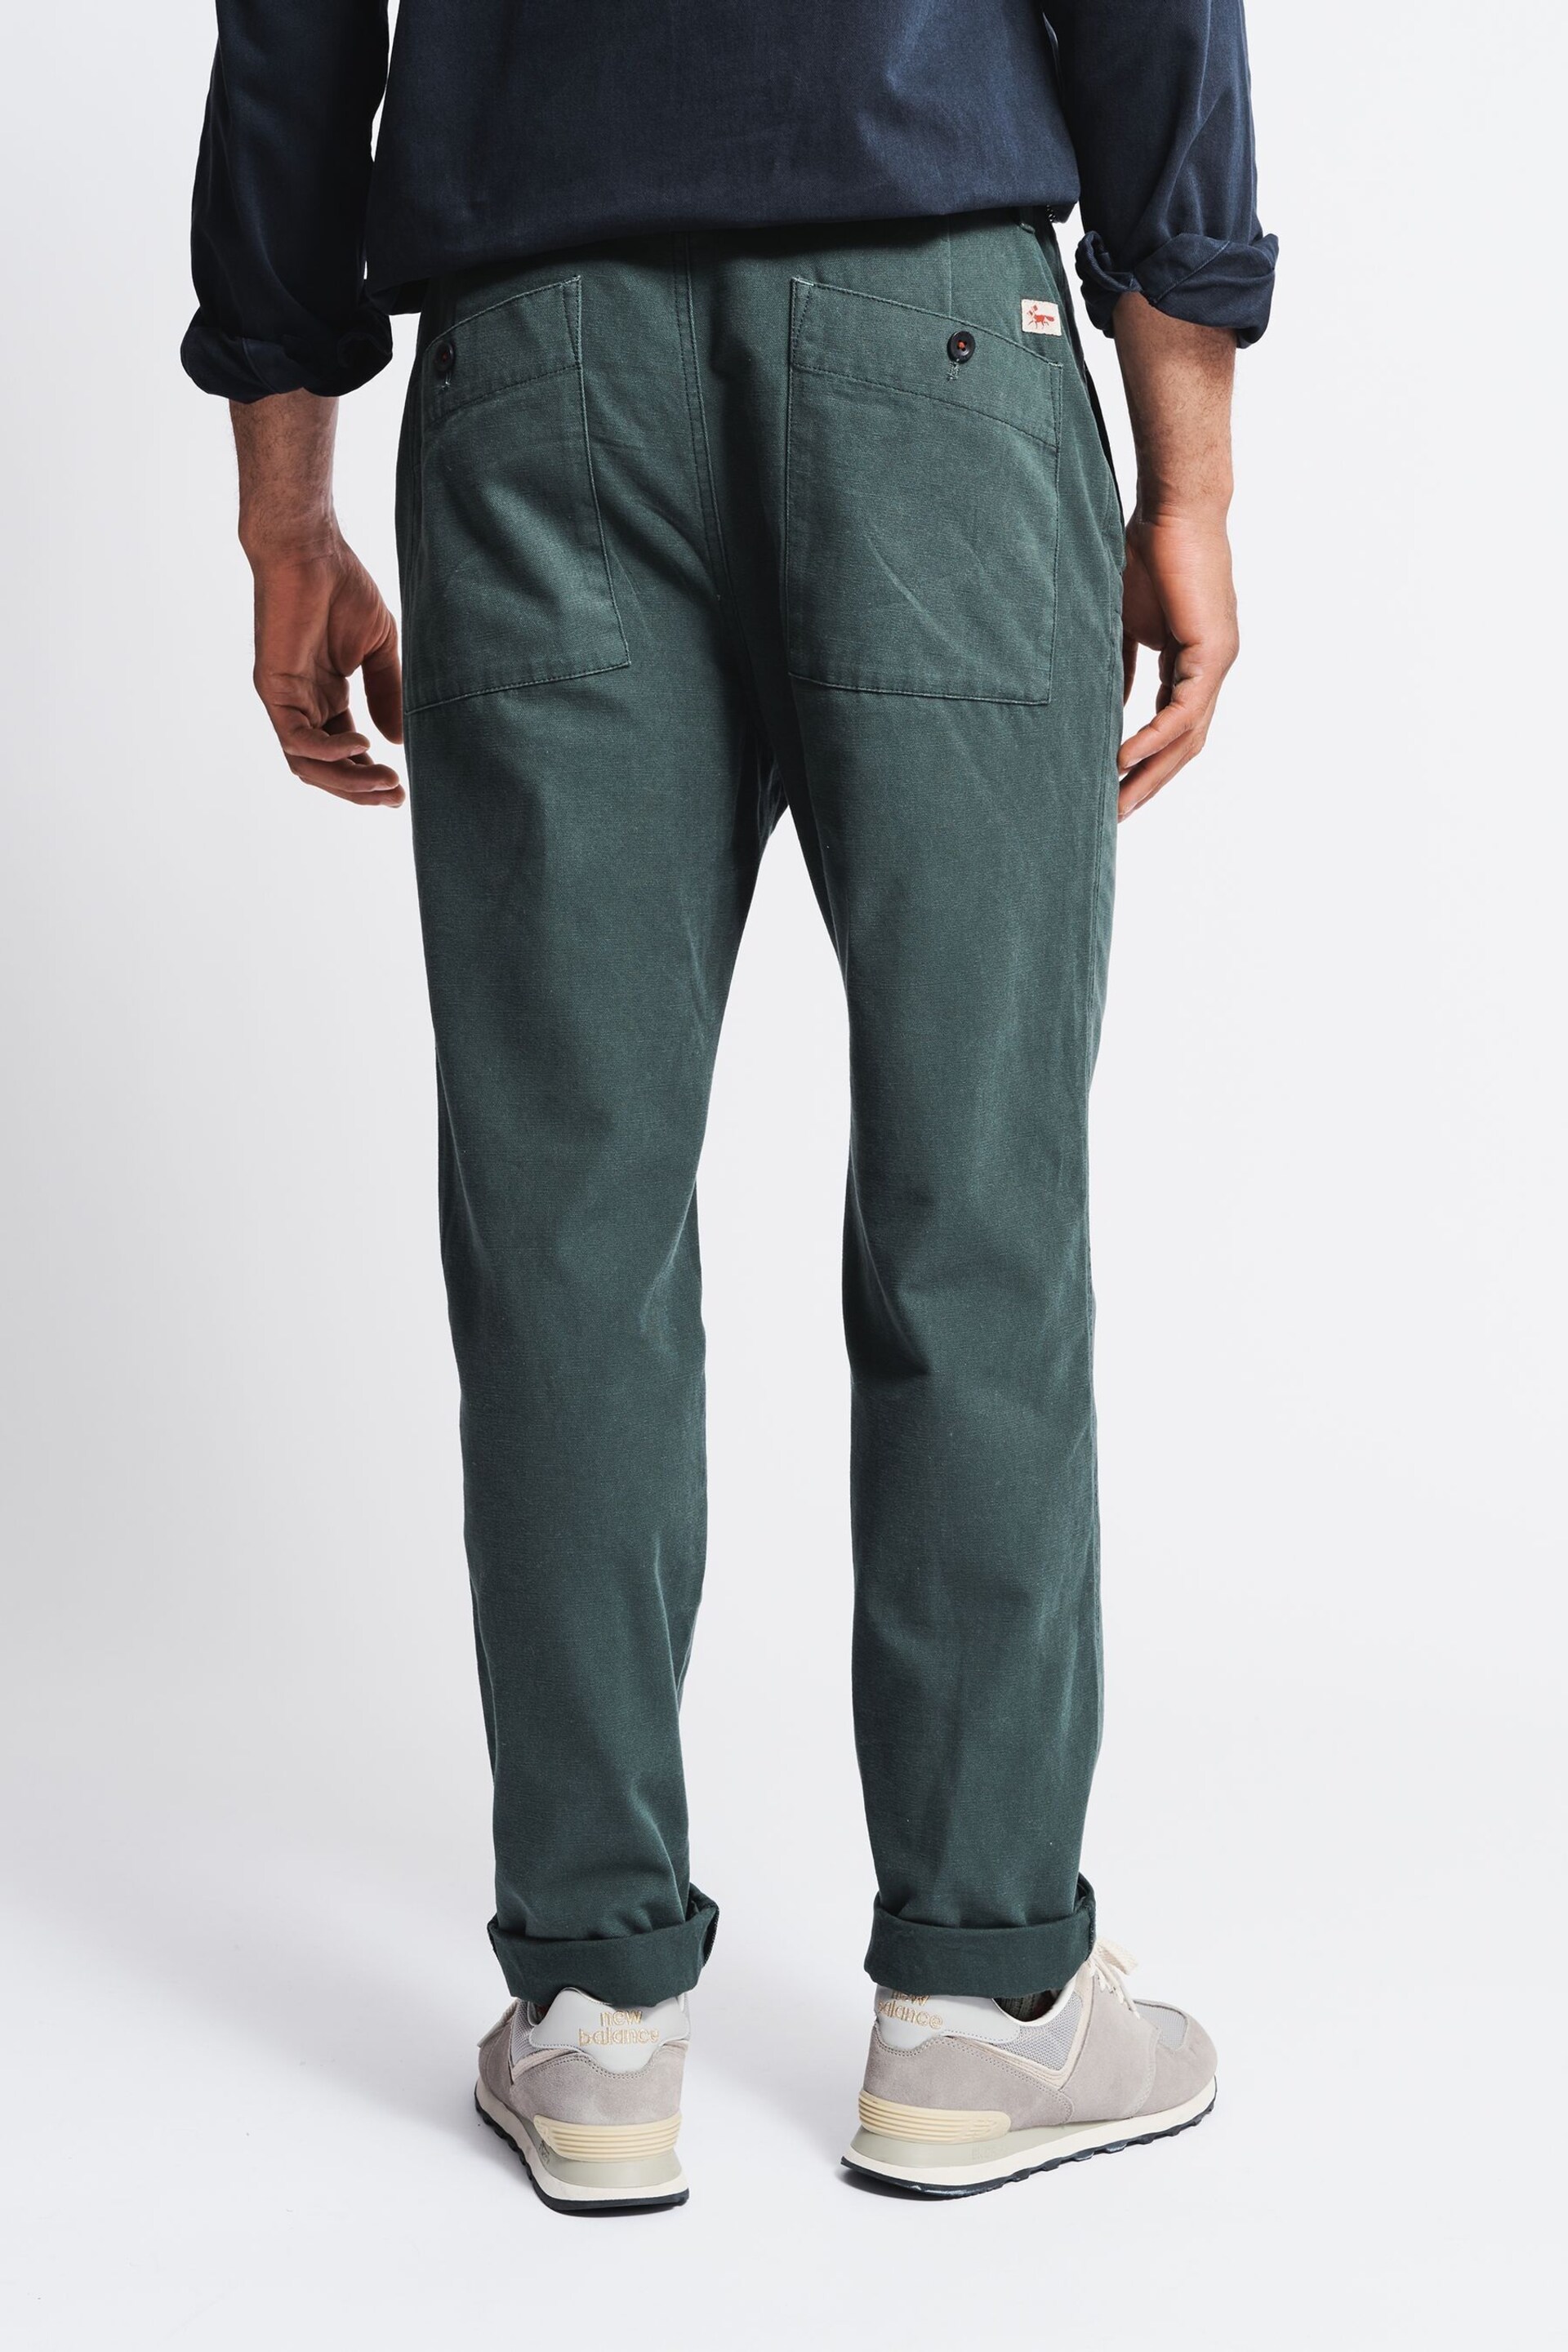 Aubin Green Nettleton Trousers - Image 2 of 6